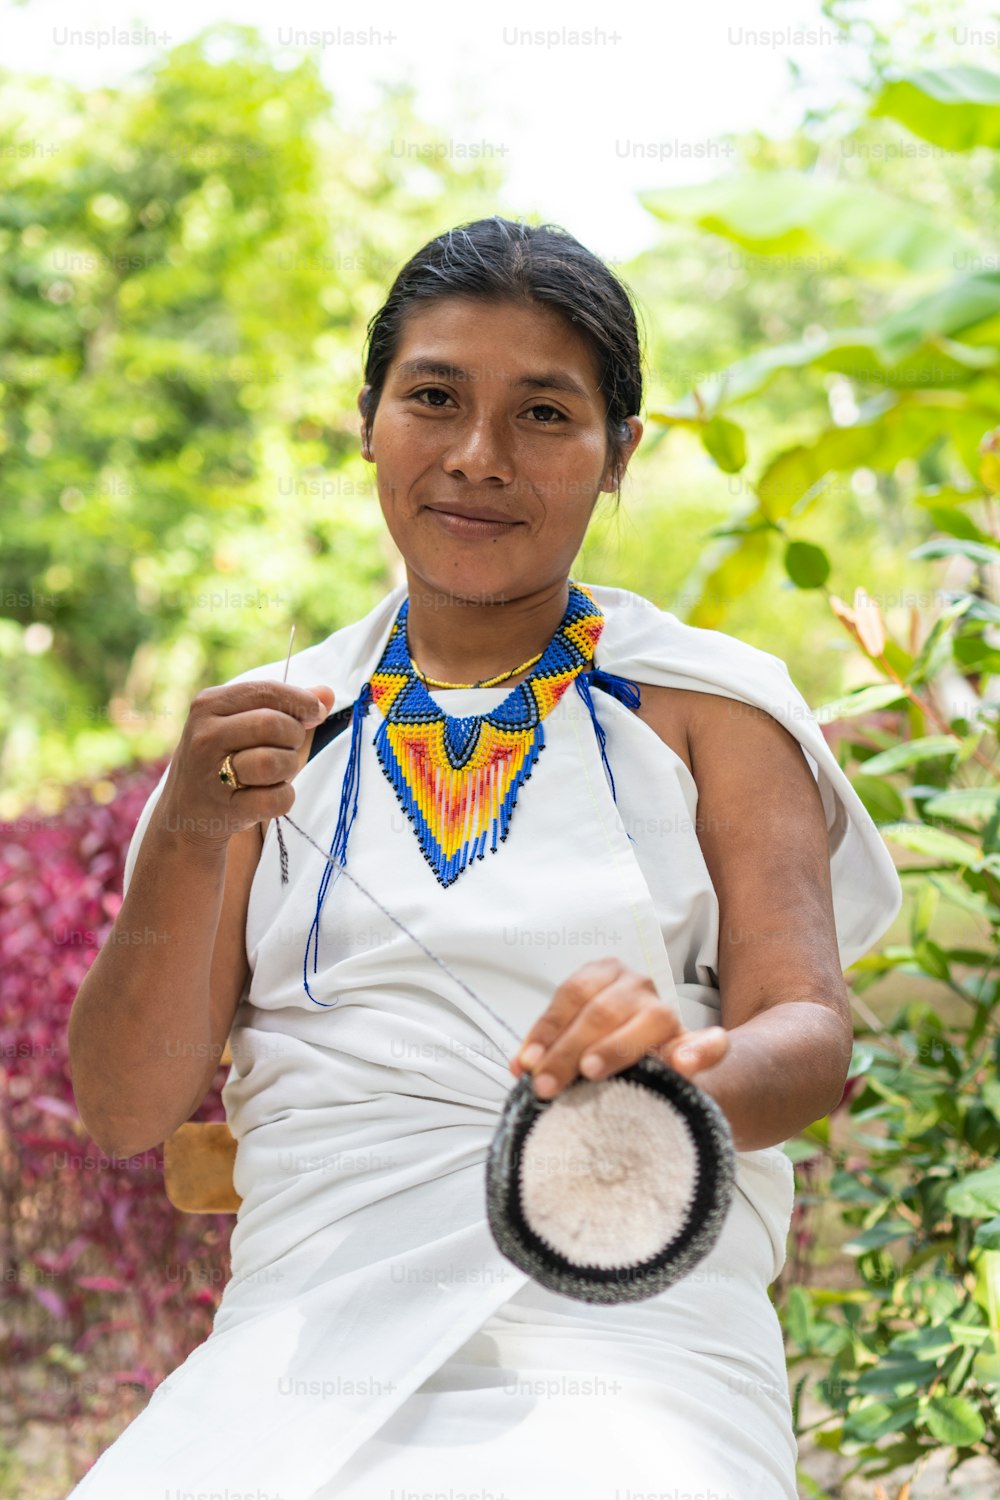 シエラネバダ・デ・サンタ・マルタ出身の先住民族の女性が、伝統的な衣装を着てカメラを見つめています。